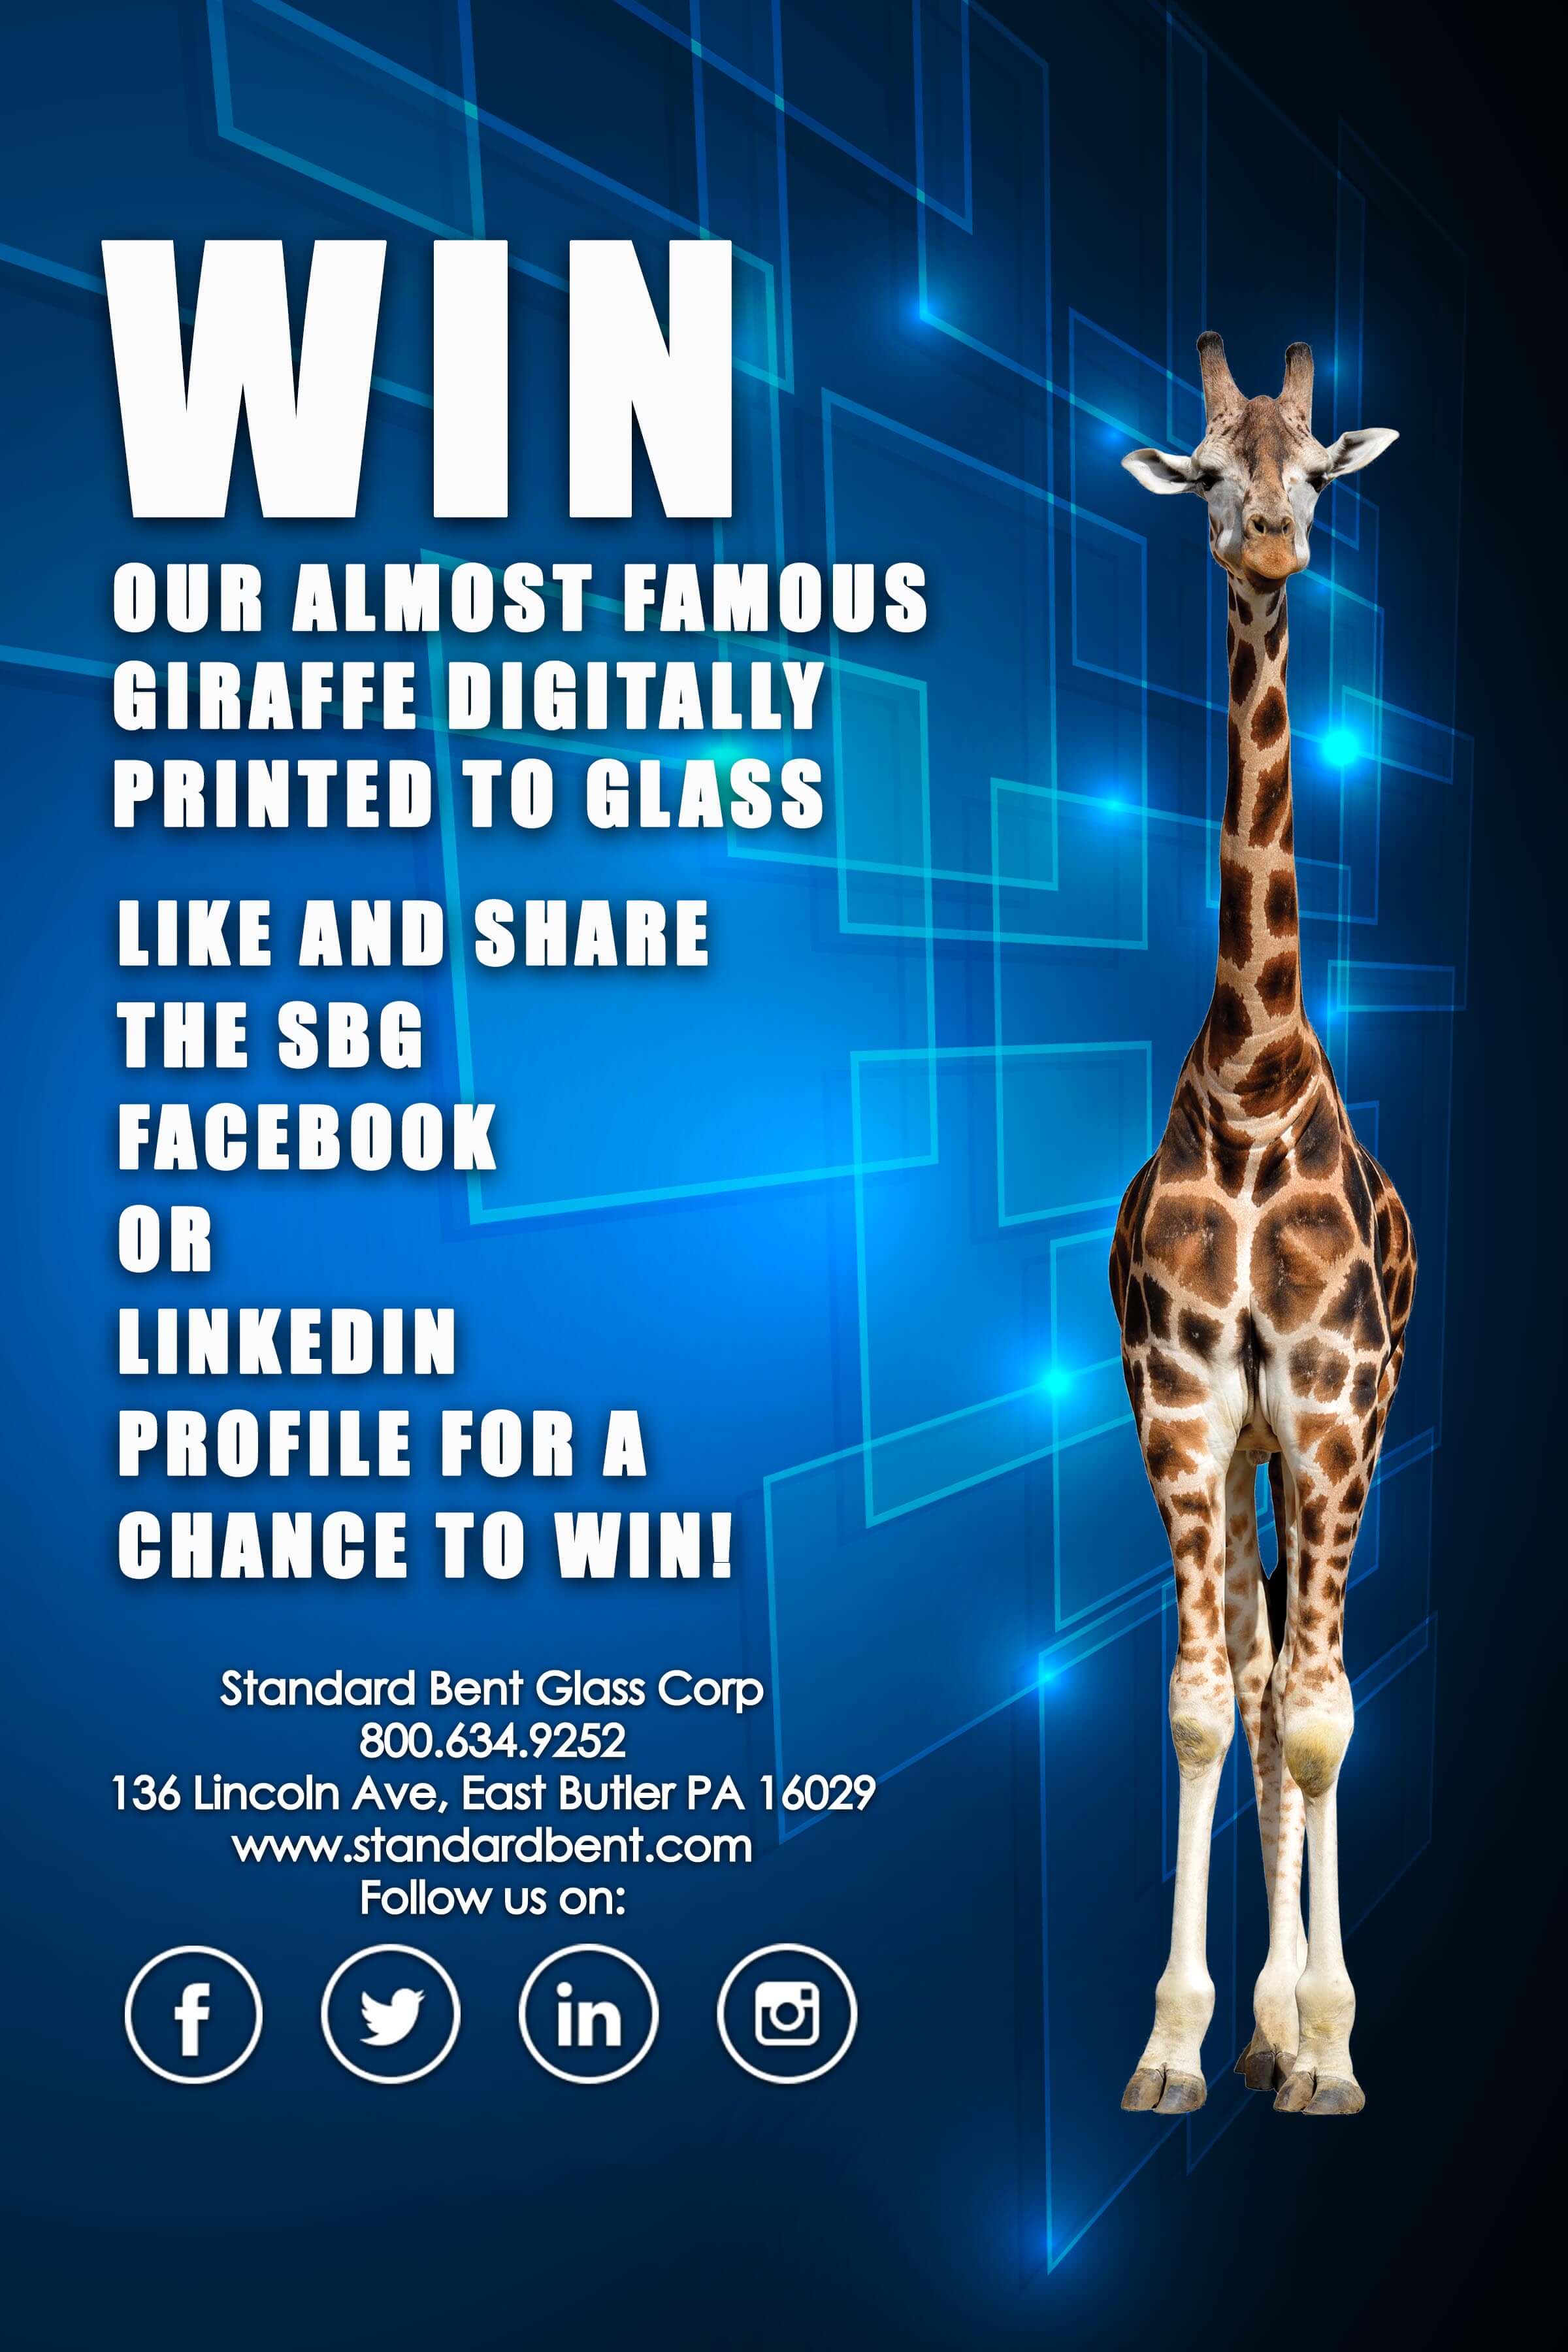 Win Our Digitally Printed Giraffe For GlassBuild 2017!